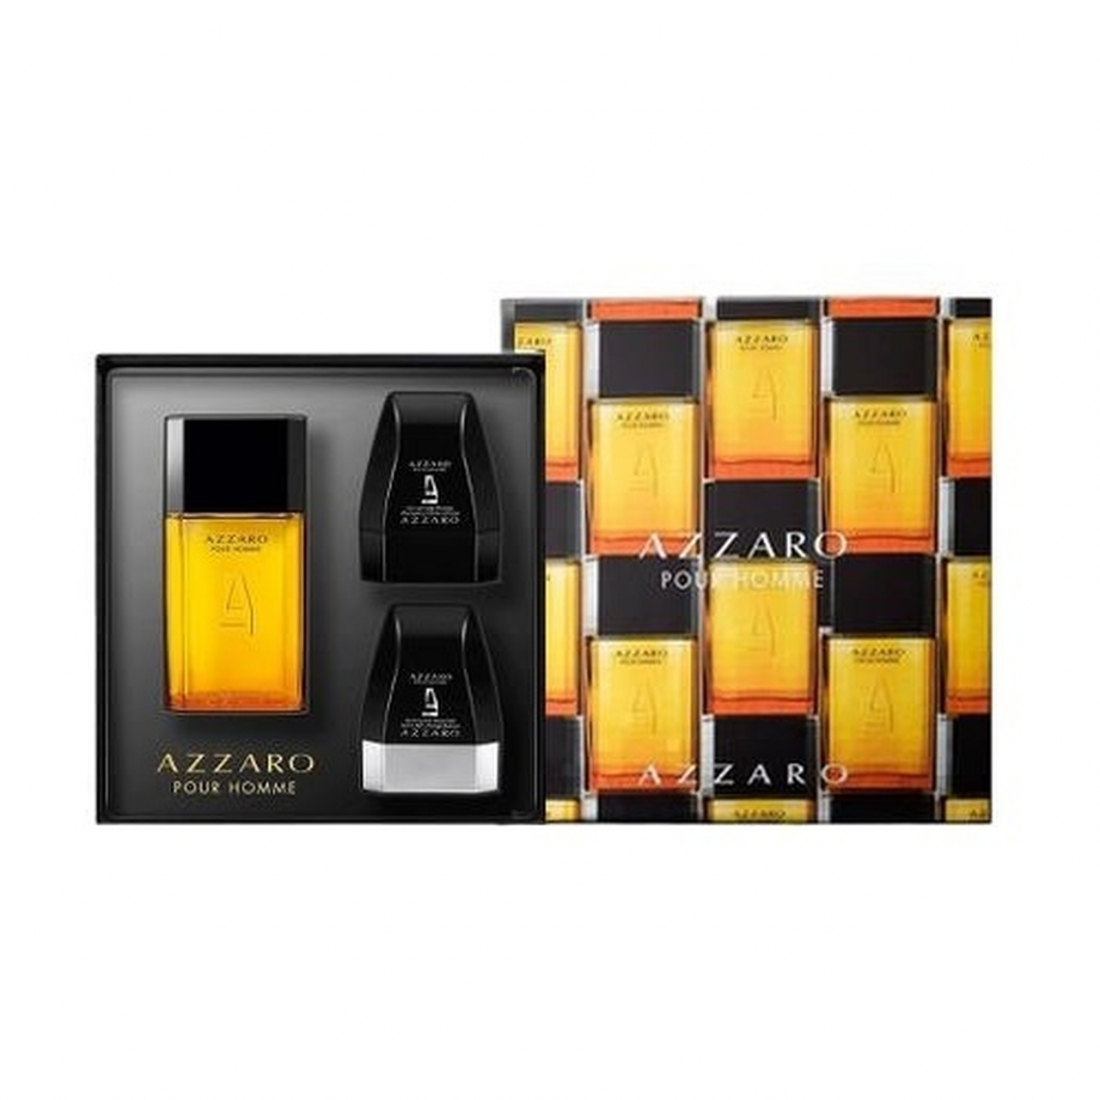 'Azzaro Pour Homme' Perfume Set - 3 Pieces